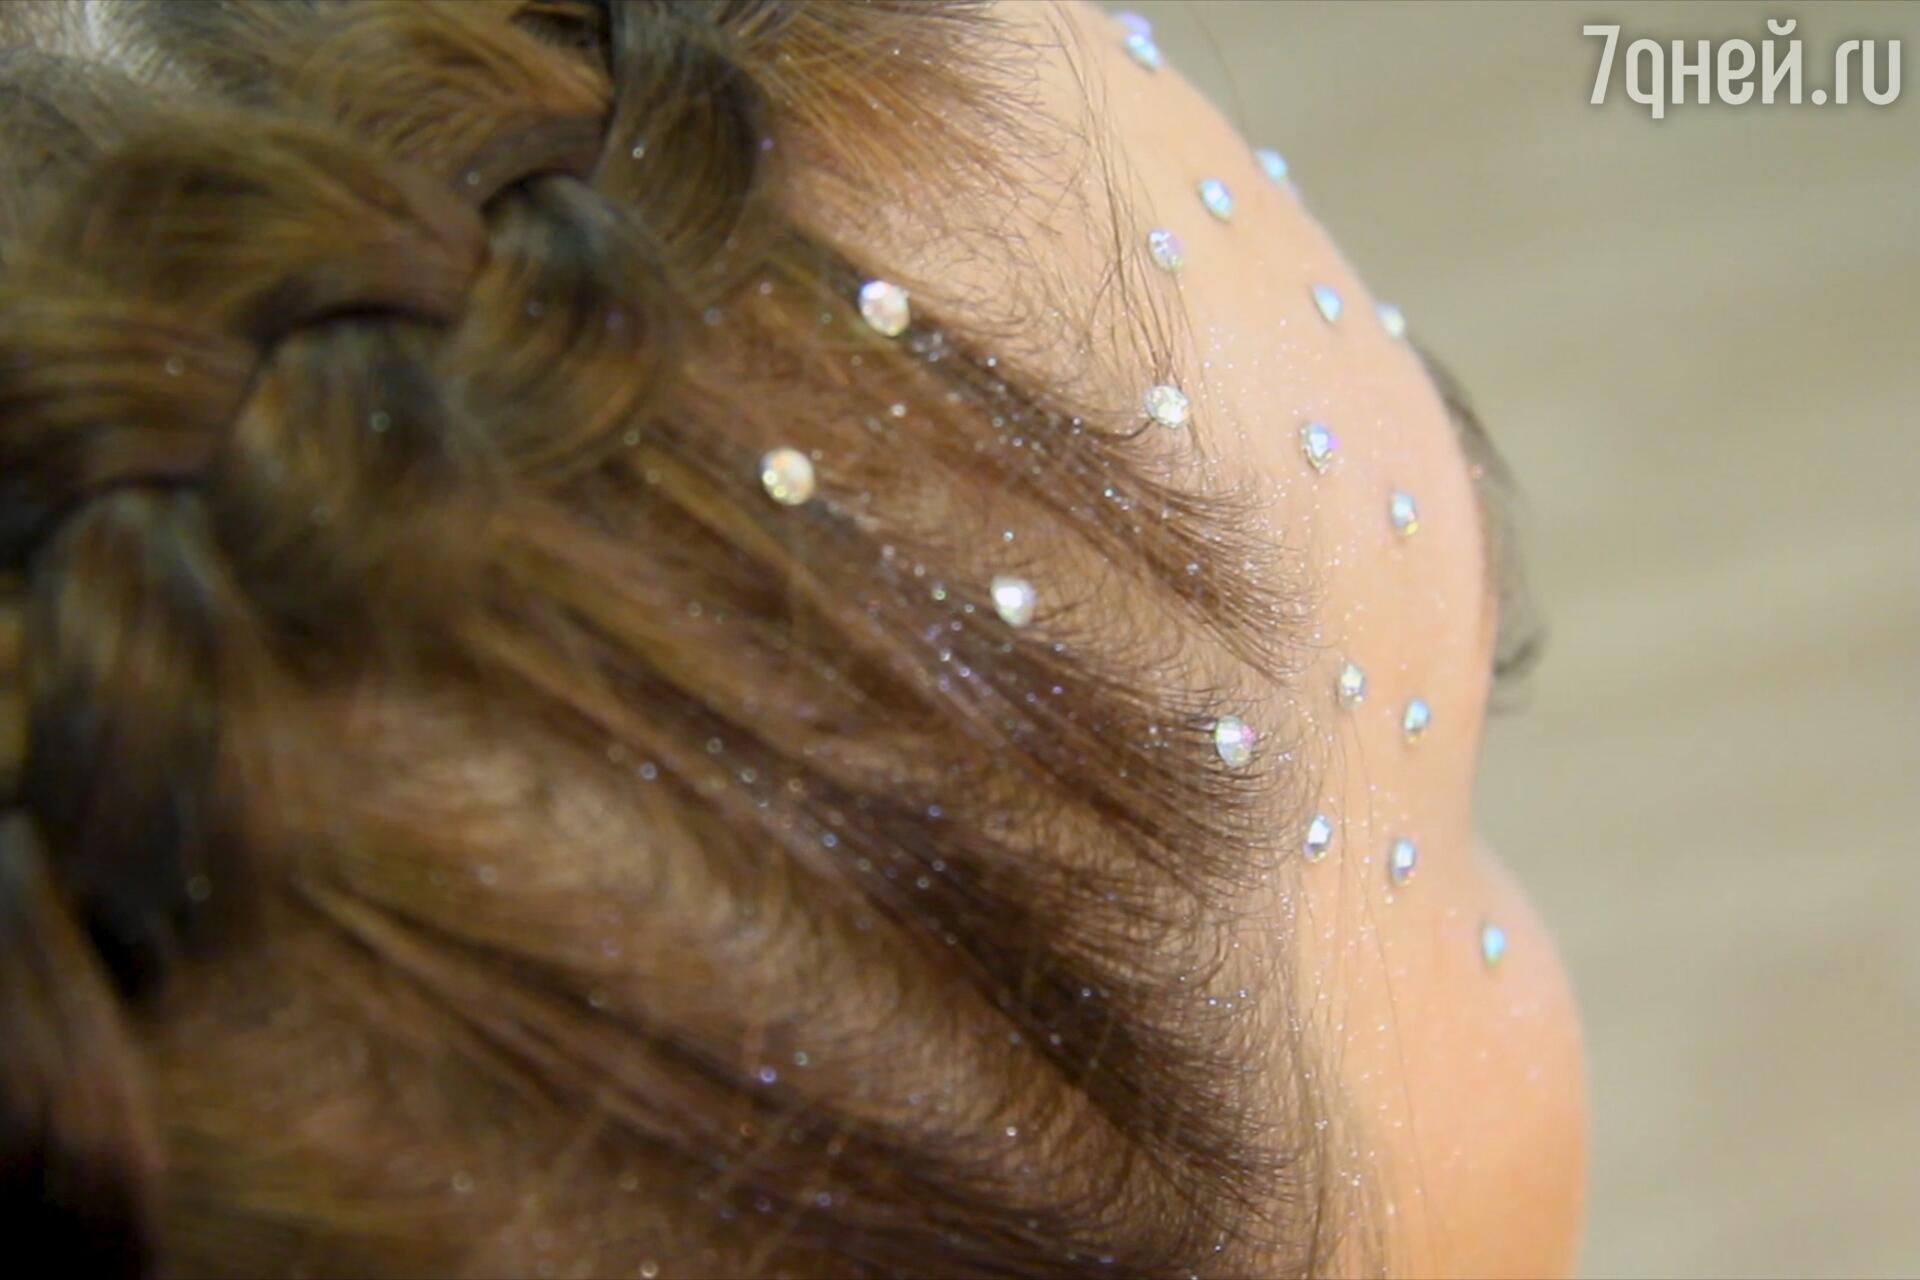 5 красивых украшений для волос девочки летом — креативные необычные идеи и лайфхаки